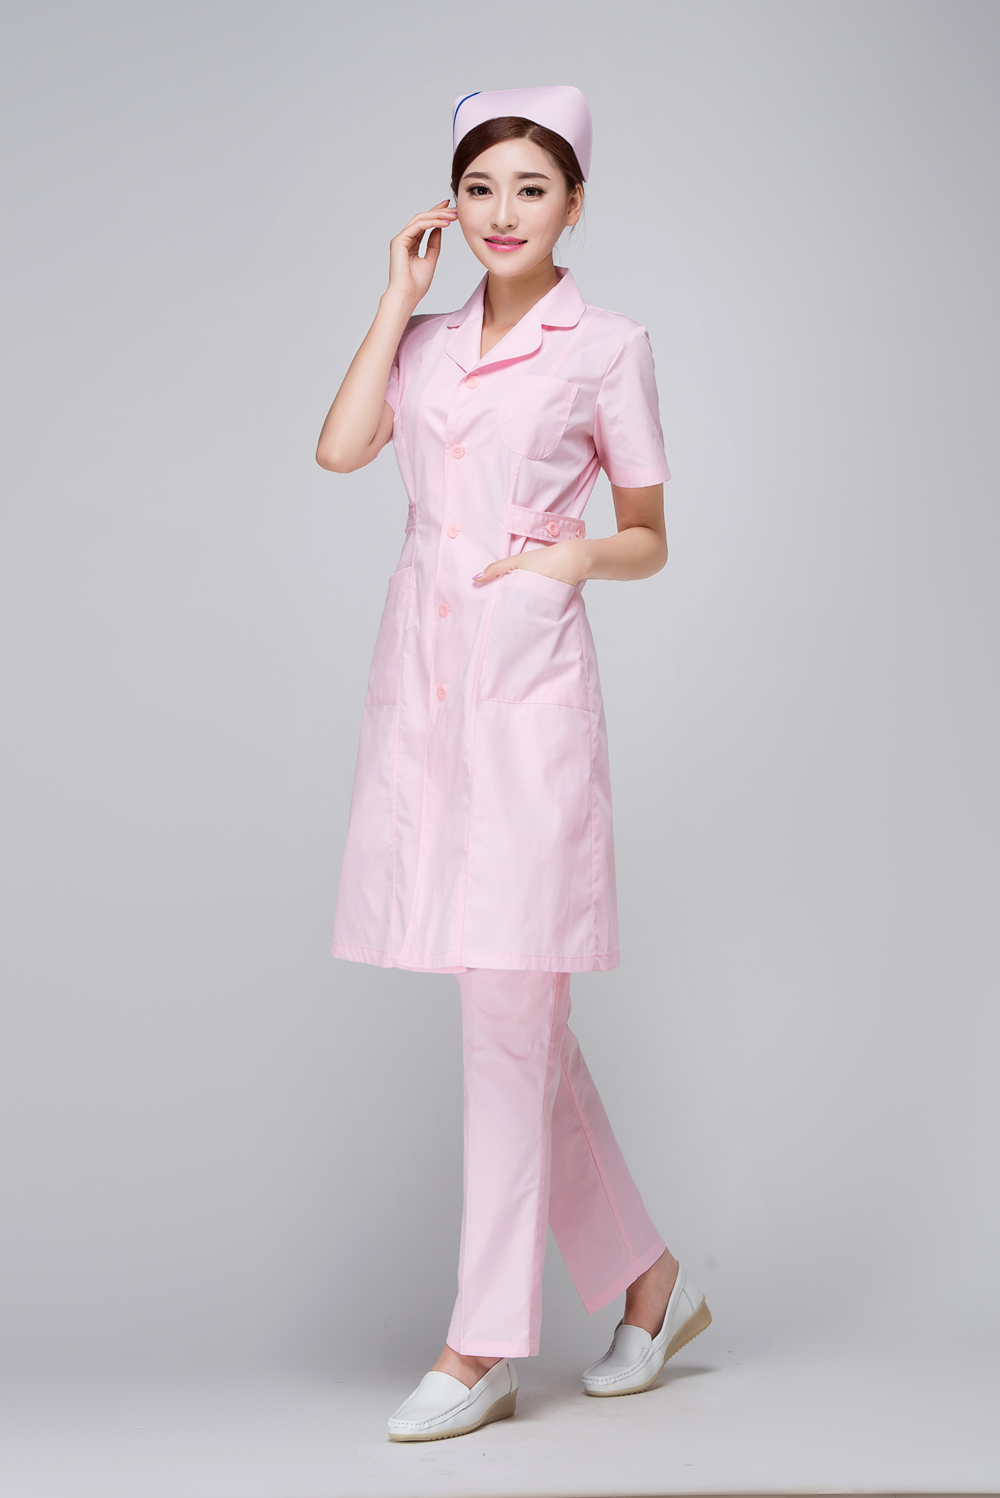 Халат и колпак. Одежда медсестры. Халат медицинский женский розовый. Костюм медицинский женский. Медсестра форма одежды.